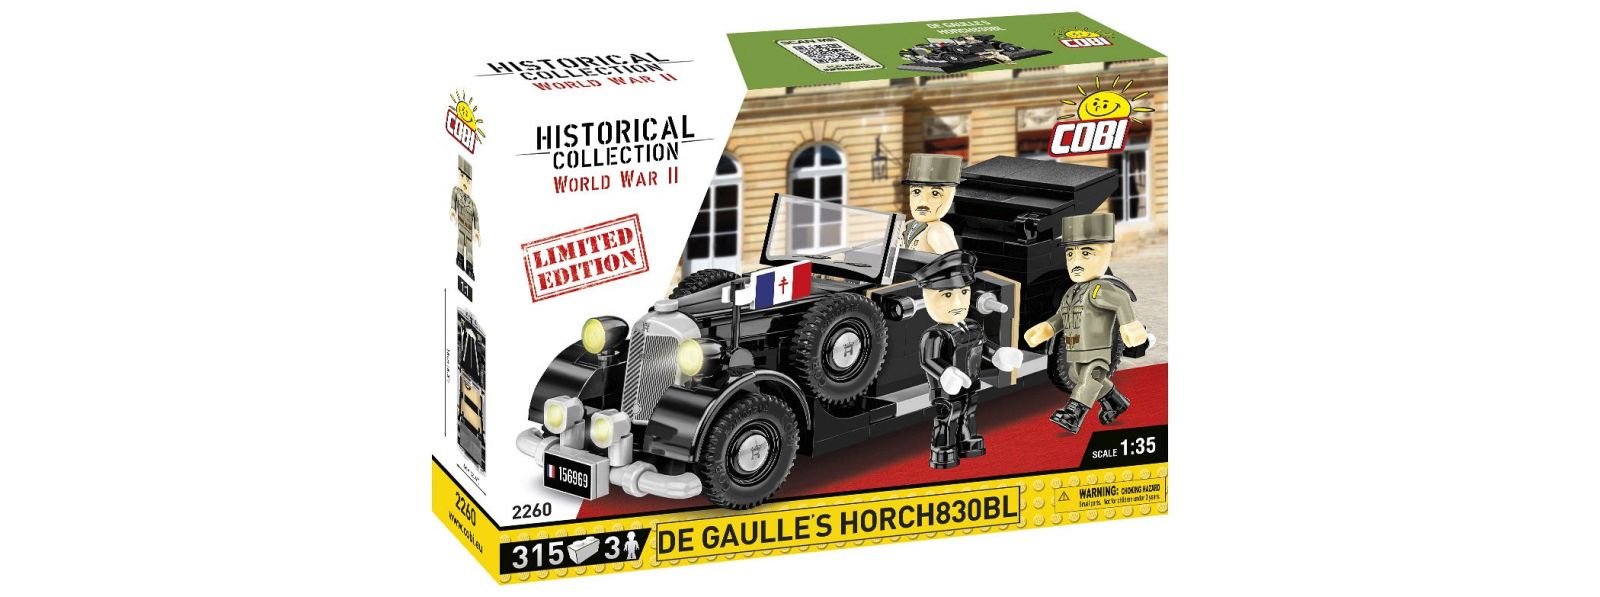 De Gaulle's Horch830BL - Limited Edition - Vorbestellung gestartet!